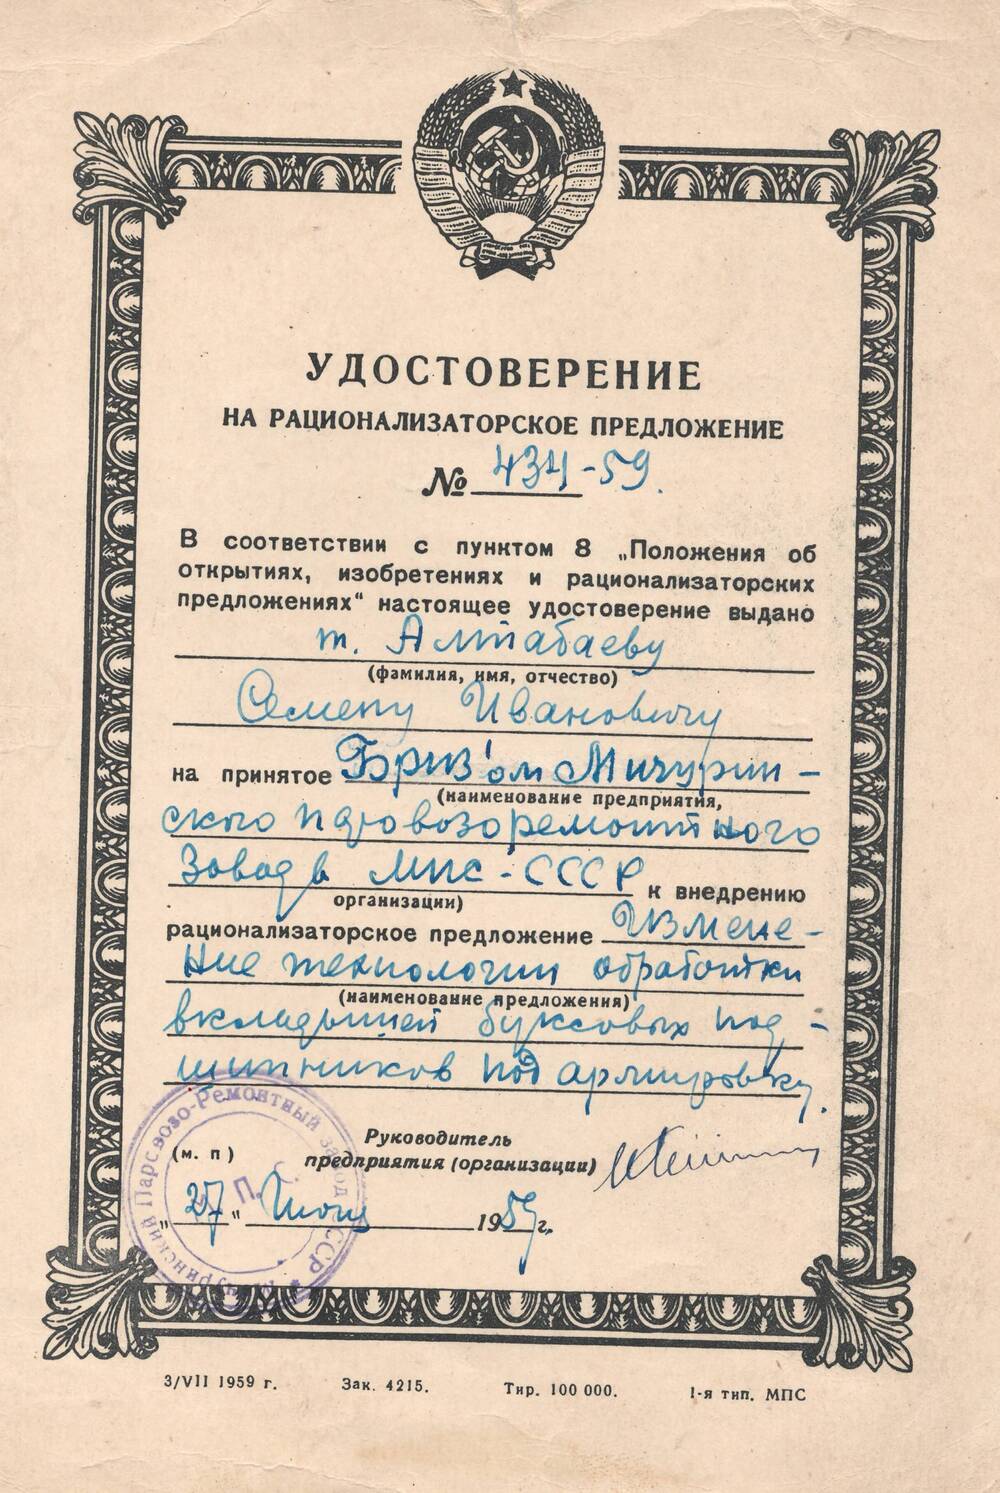 Удостоверение на рационализаторское предложение №434-59, выданное Алтабаеву Семену Ивановичу